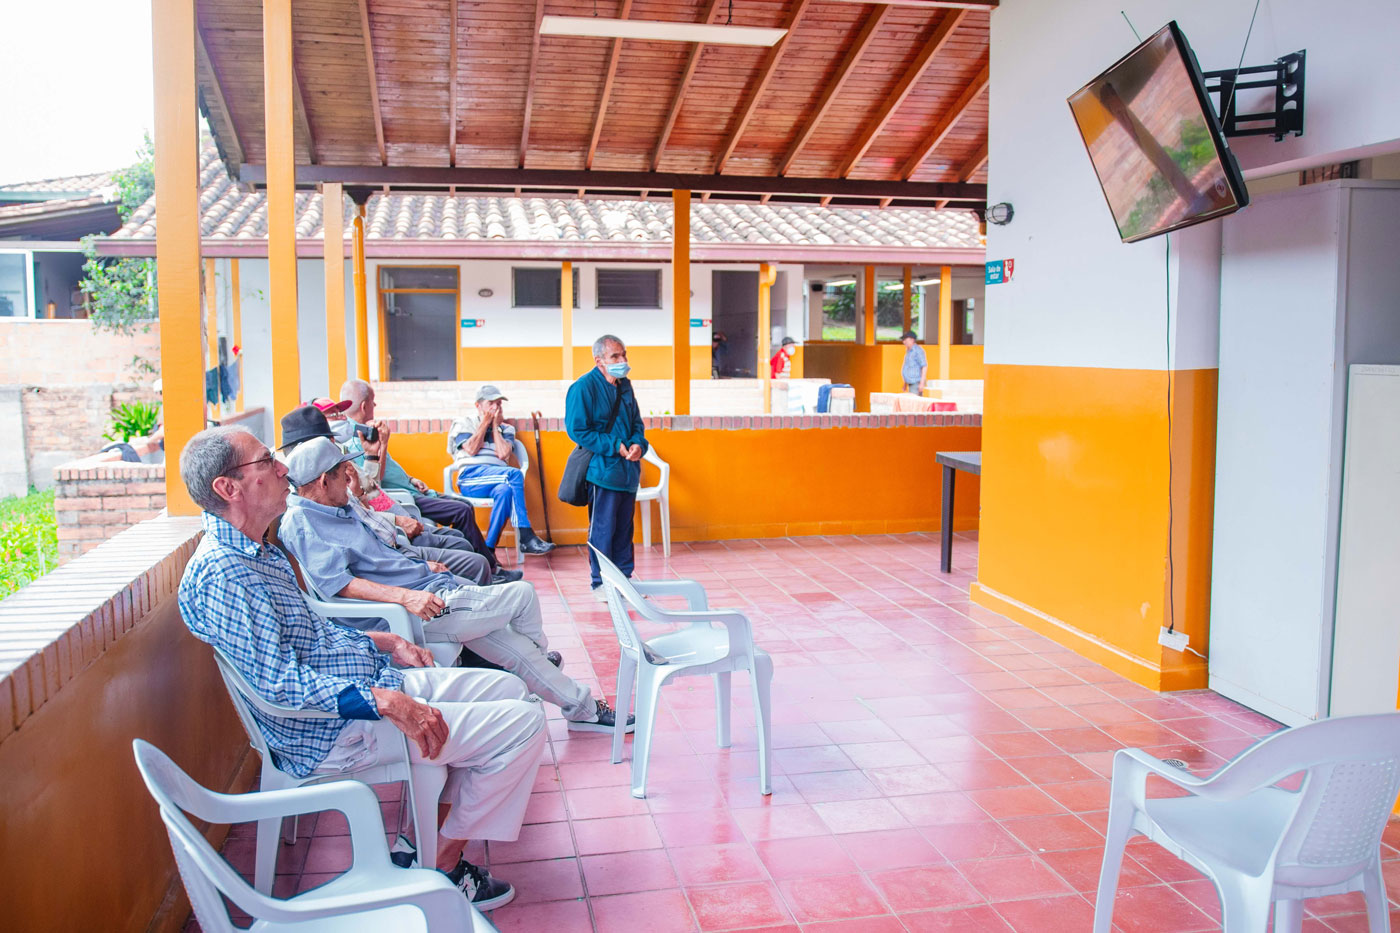 Colonia Belencito amplía sus servicios a adultos mayores vulnerables